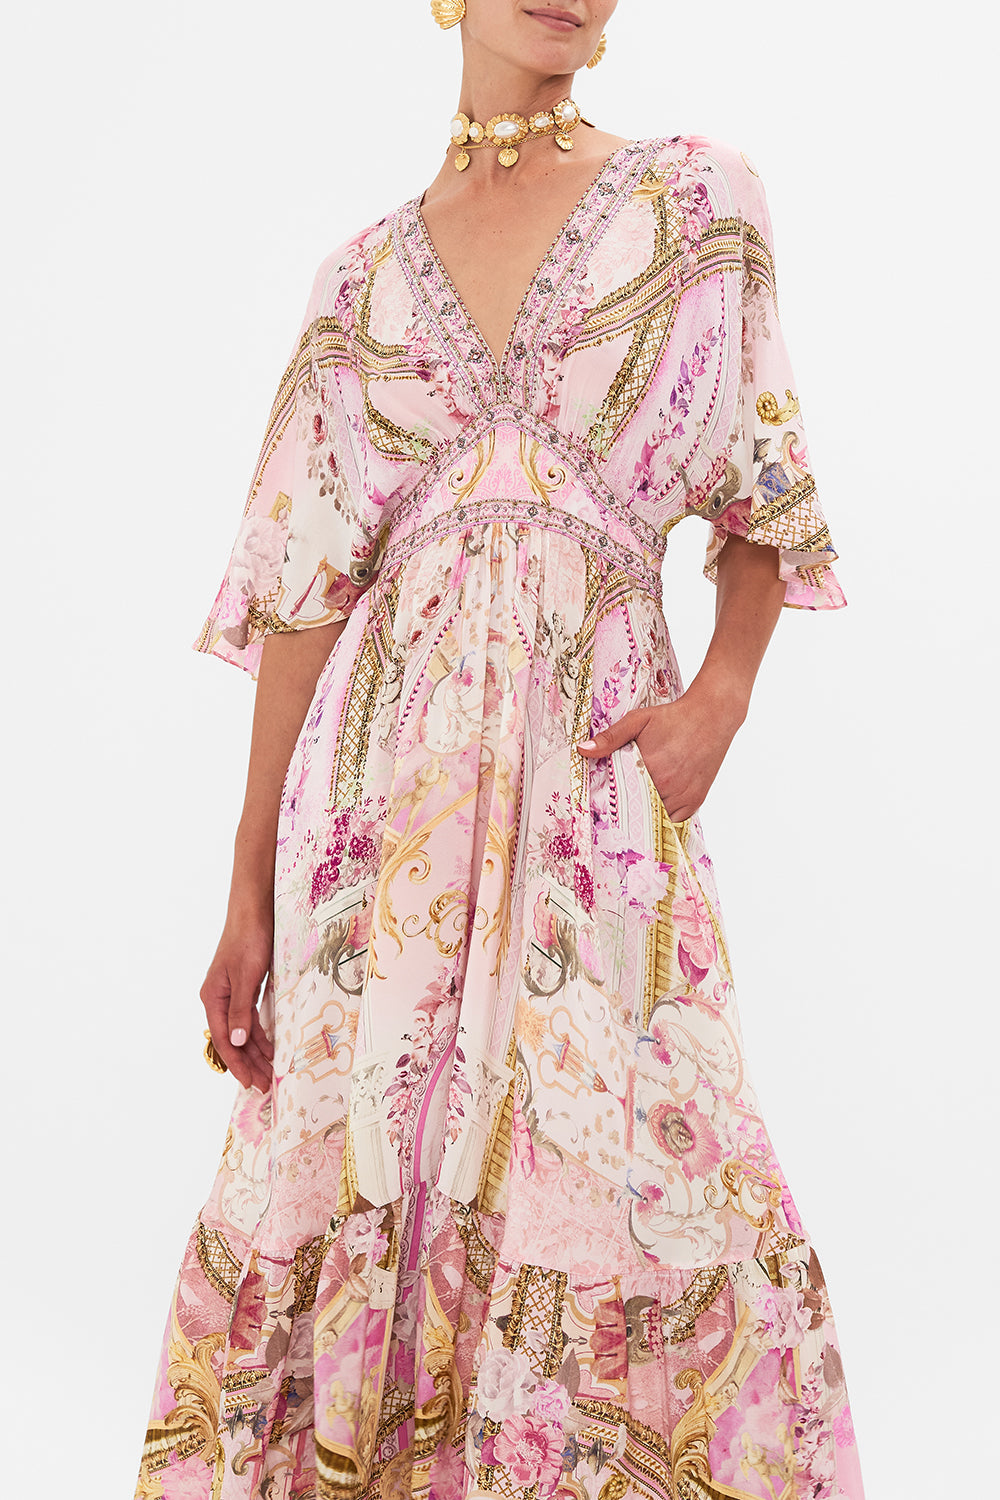 Side view of model wearing pink silk ruffle dress in Fresco Fairytale print